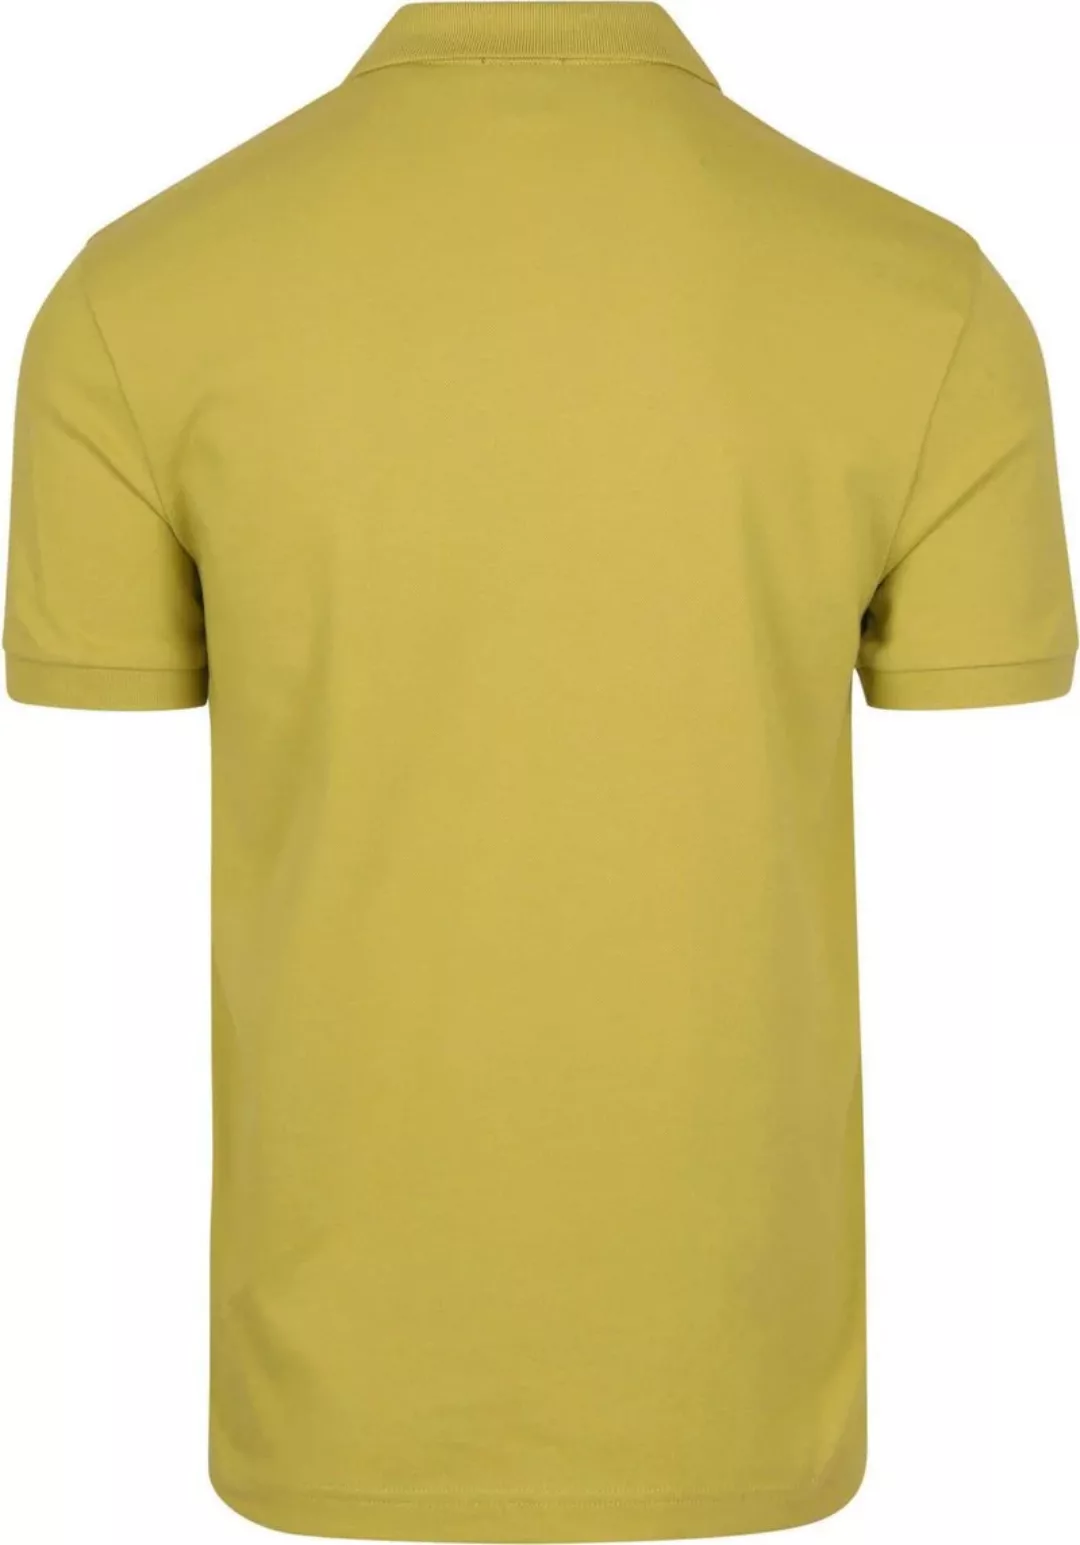 BOSS Polo Shirt Passenger Hellgrün - Größe 3XL günstig online kaufen